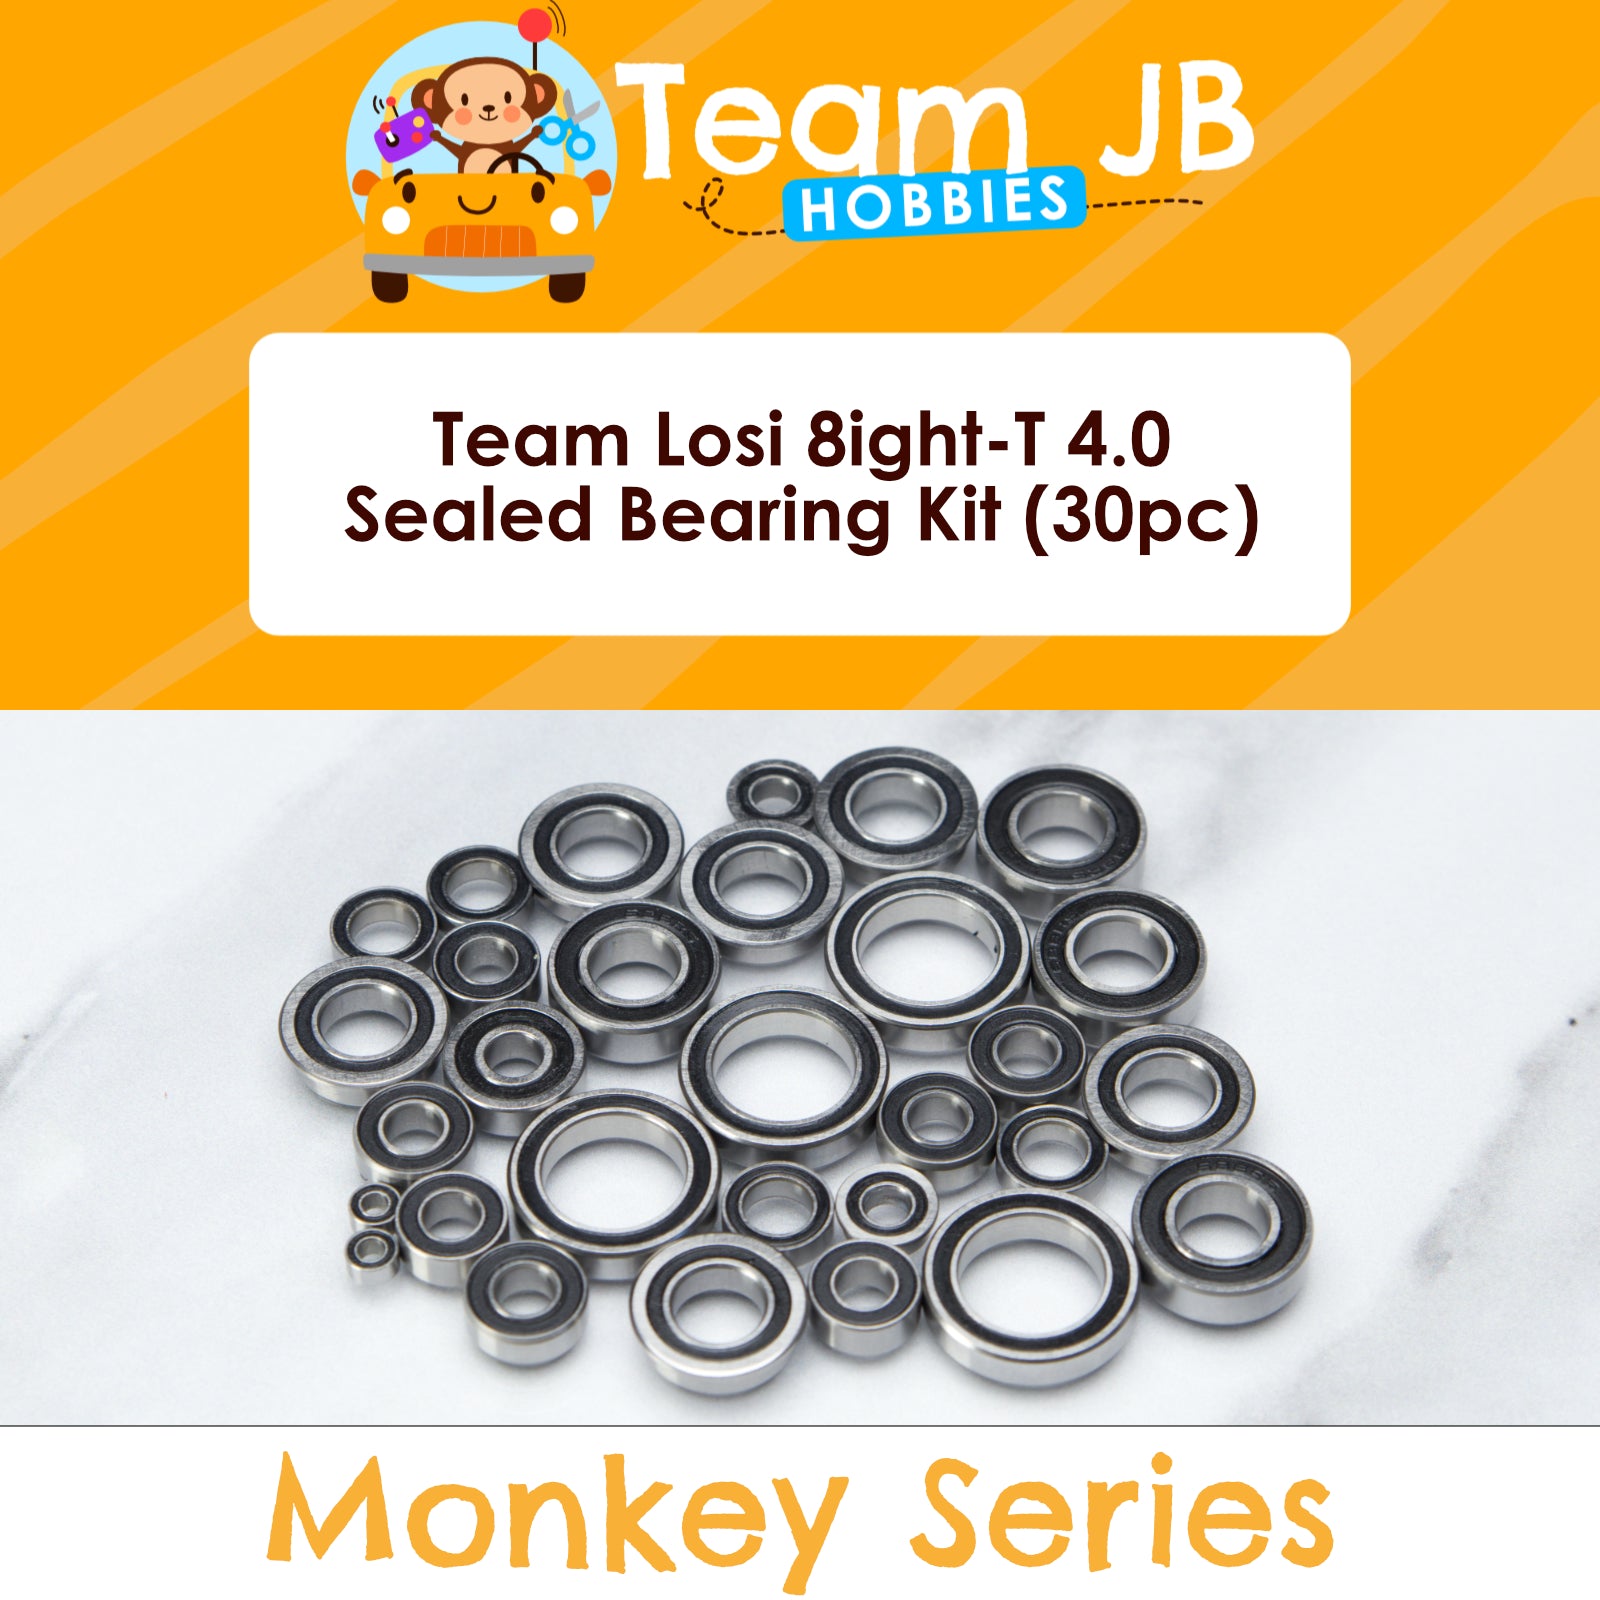 Team Losi 8ight-T 4.0 - Sealed Bearing Kit